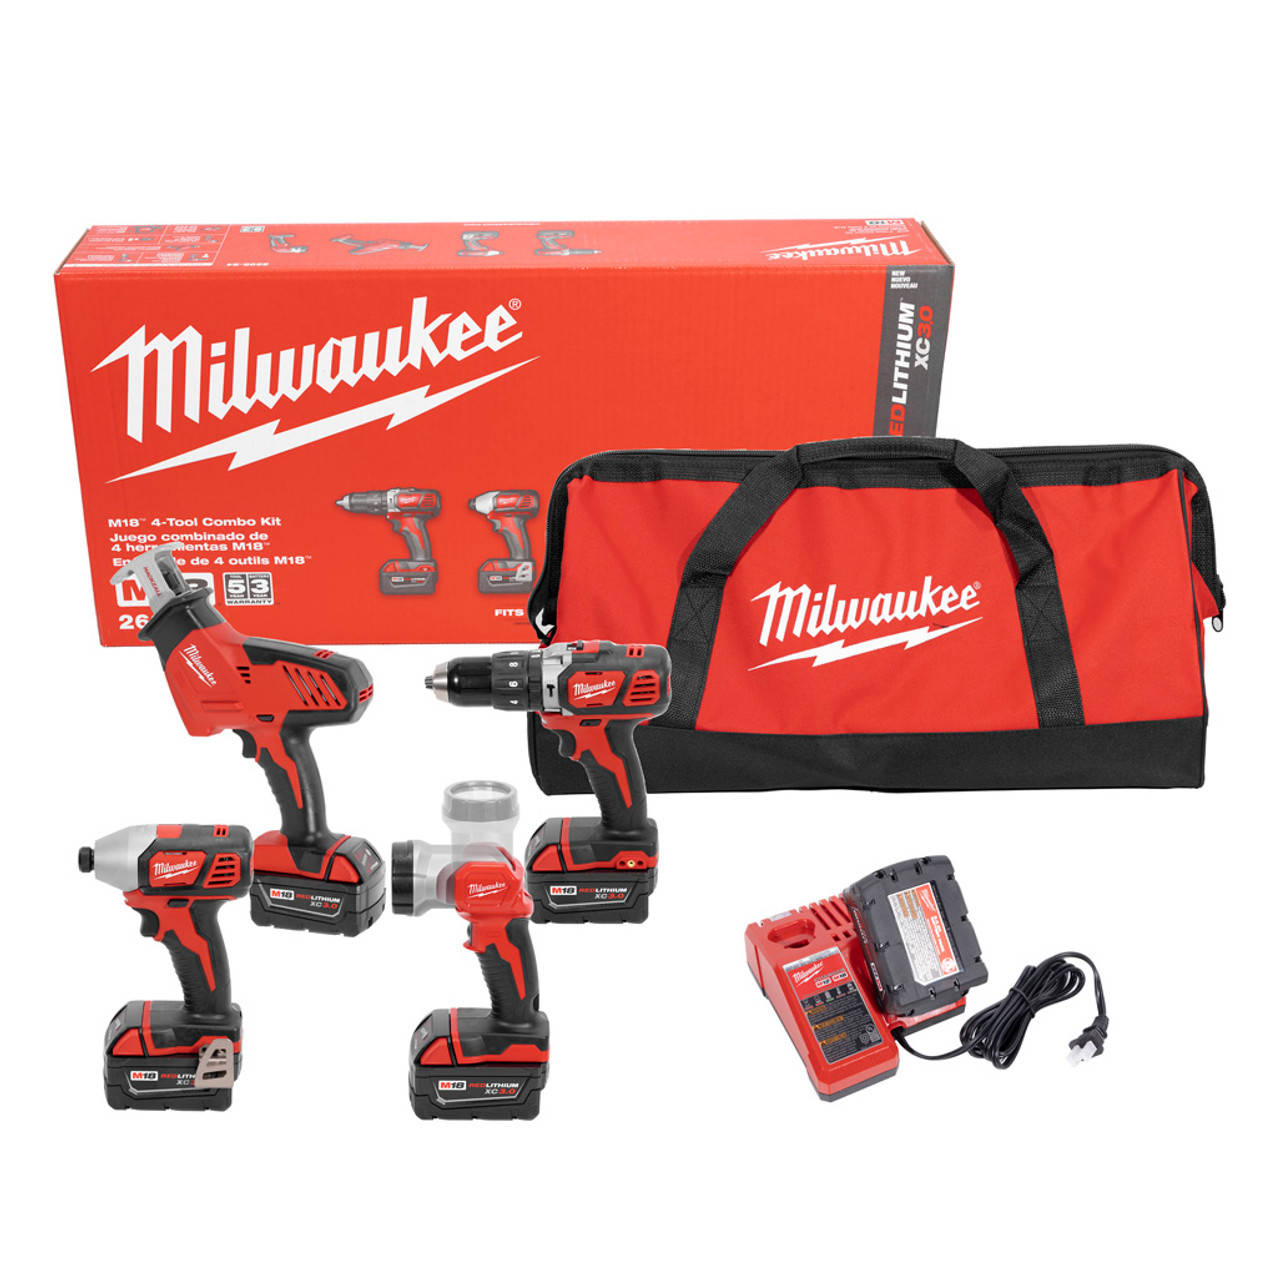 Milwaukee m18 ツール コンボ キット ハンマー ドリル ハックザル インパクト ドライバー (2695-24) JB Tools